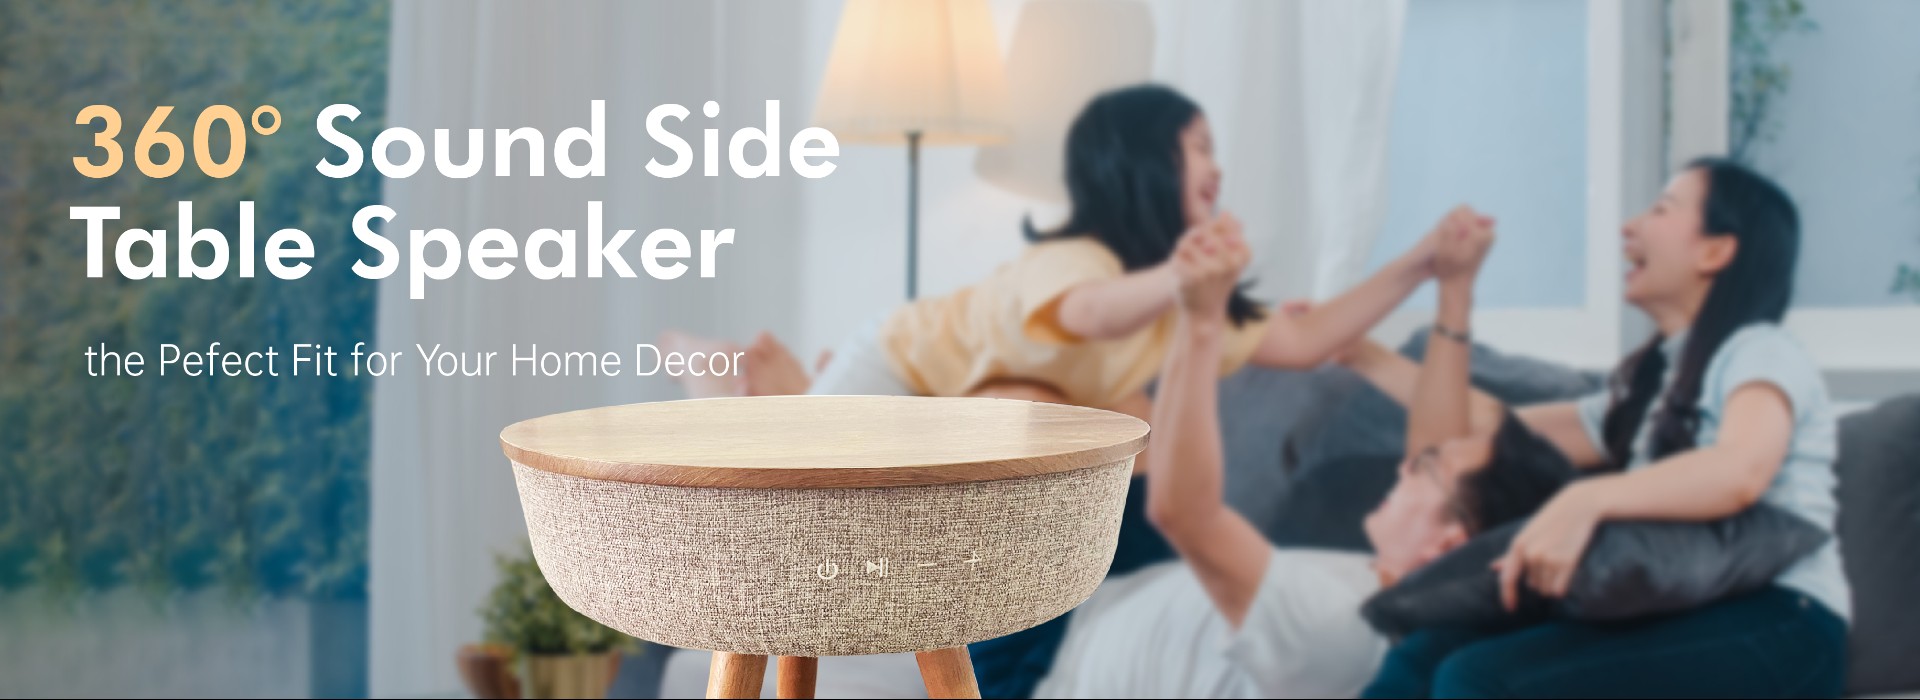 Home Decor Table Speaker